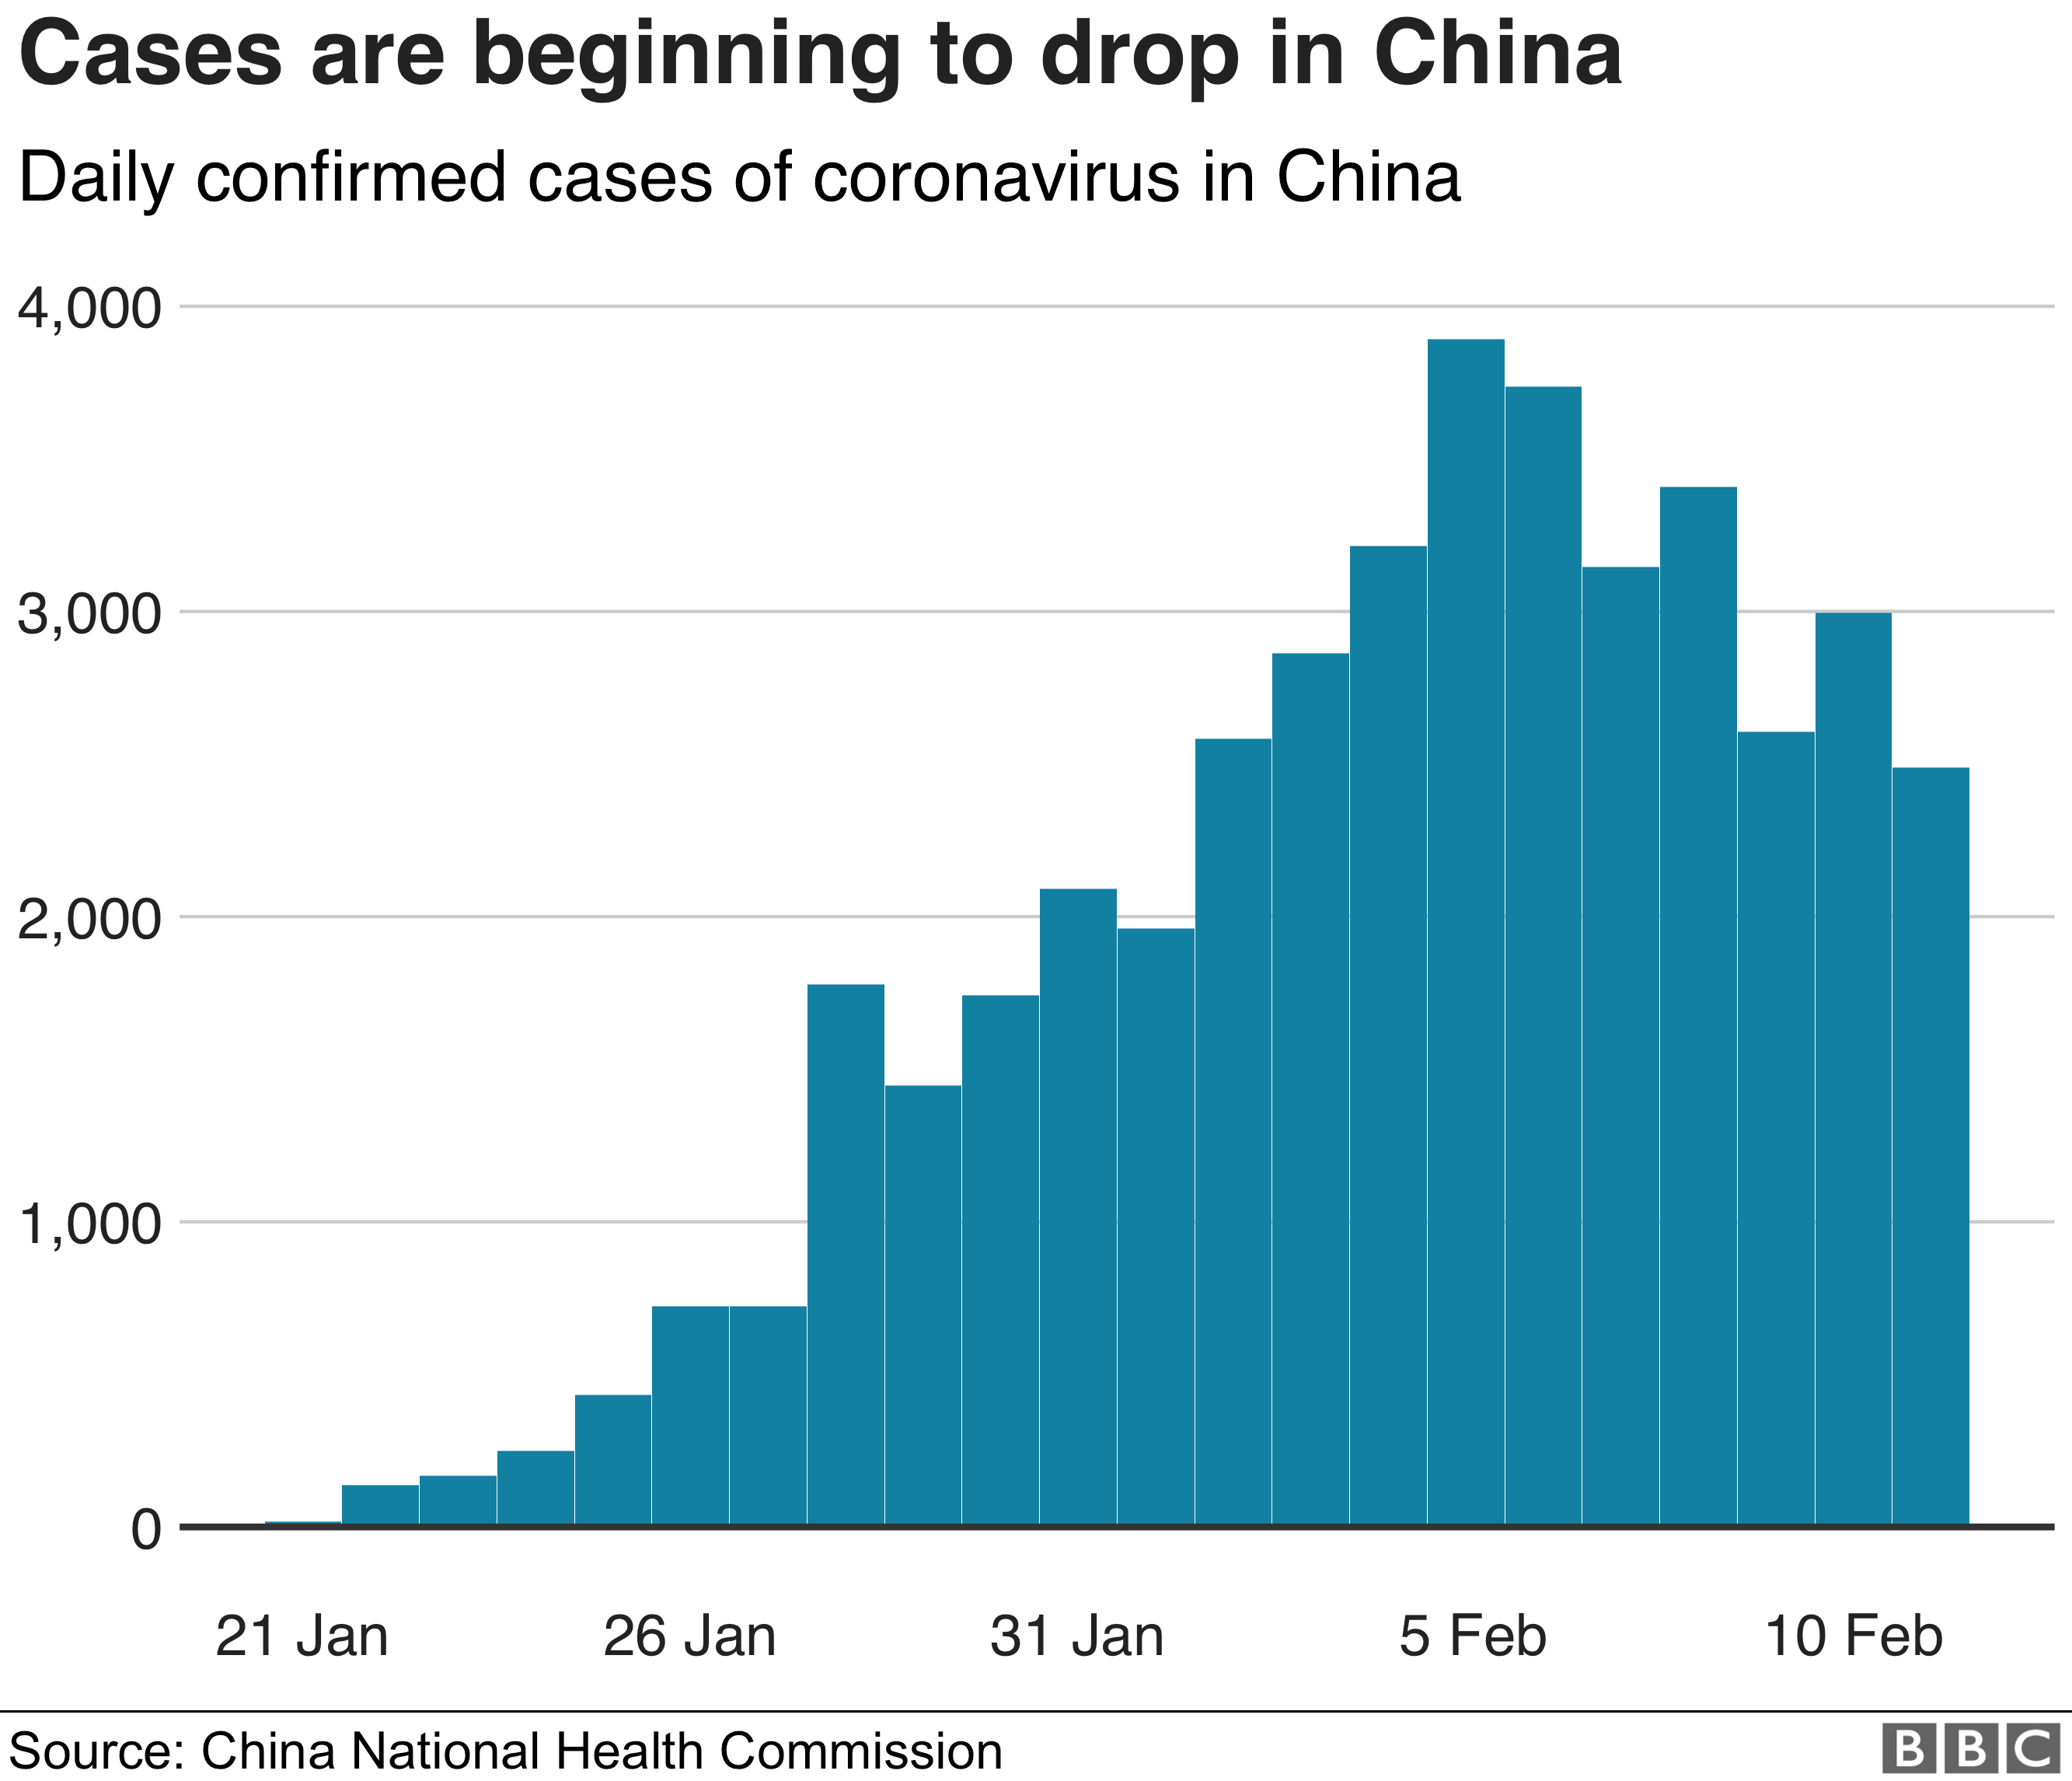 График, показывающий, как количество ежедневно подтвержденных случаев коронавируса в Китае начинает снижаться с пика 5 февраля